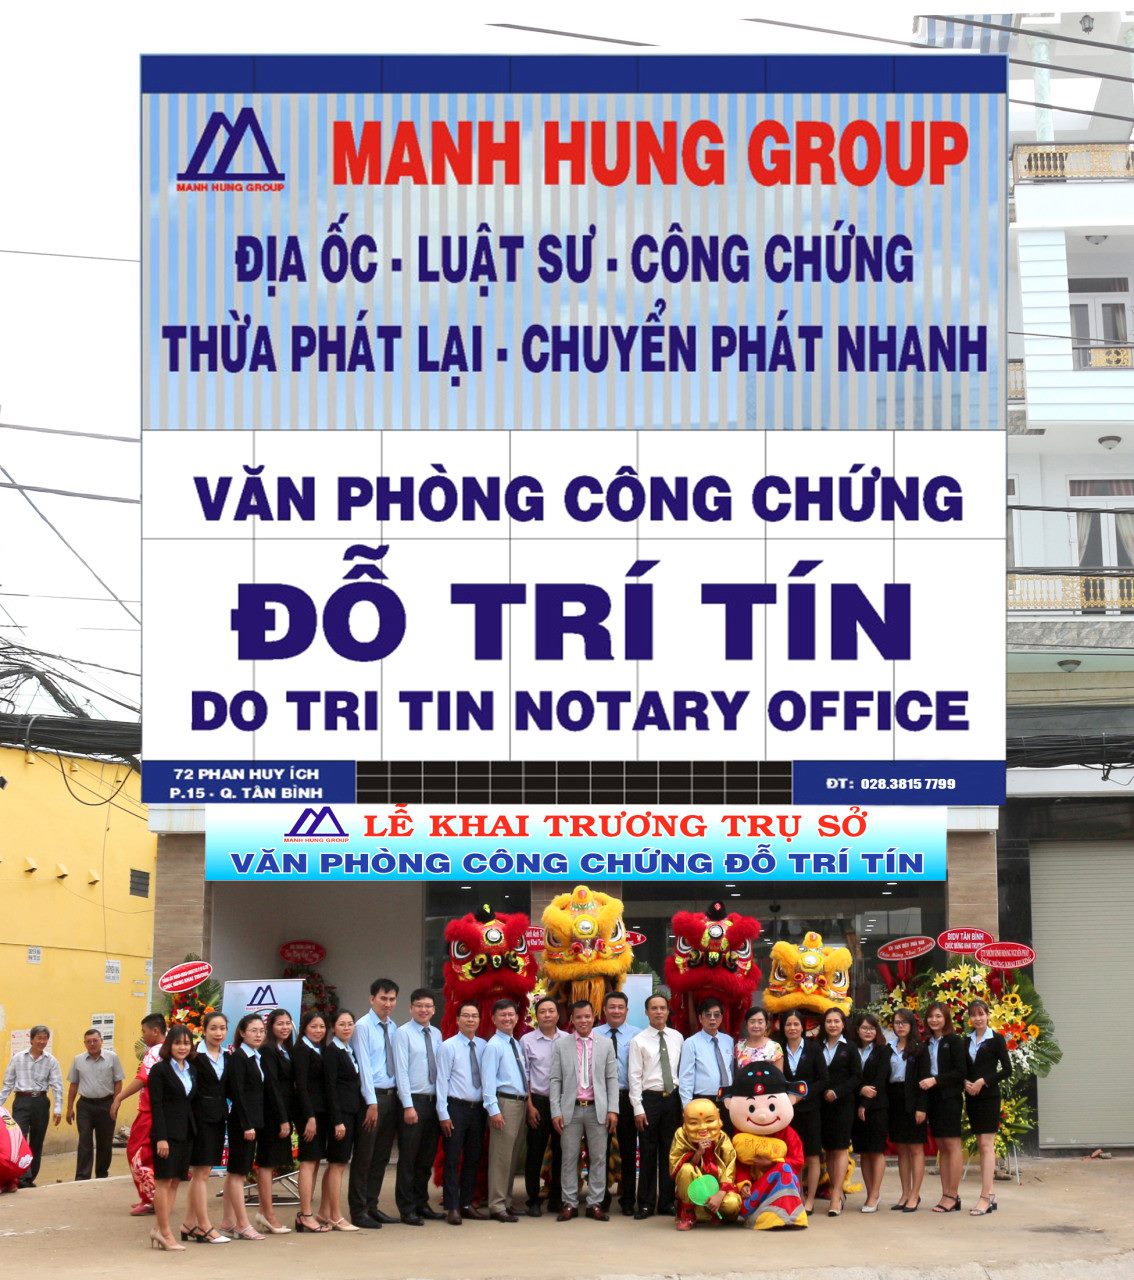 Văn phòng công chứng Đỗ Trí Tín - 72-72/2 Phan Huy ích, Tp.HCM